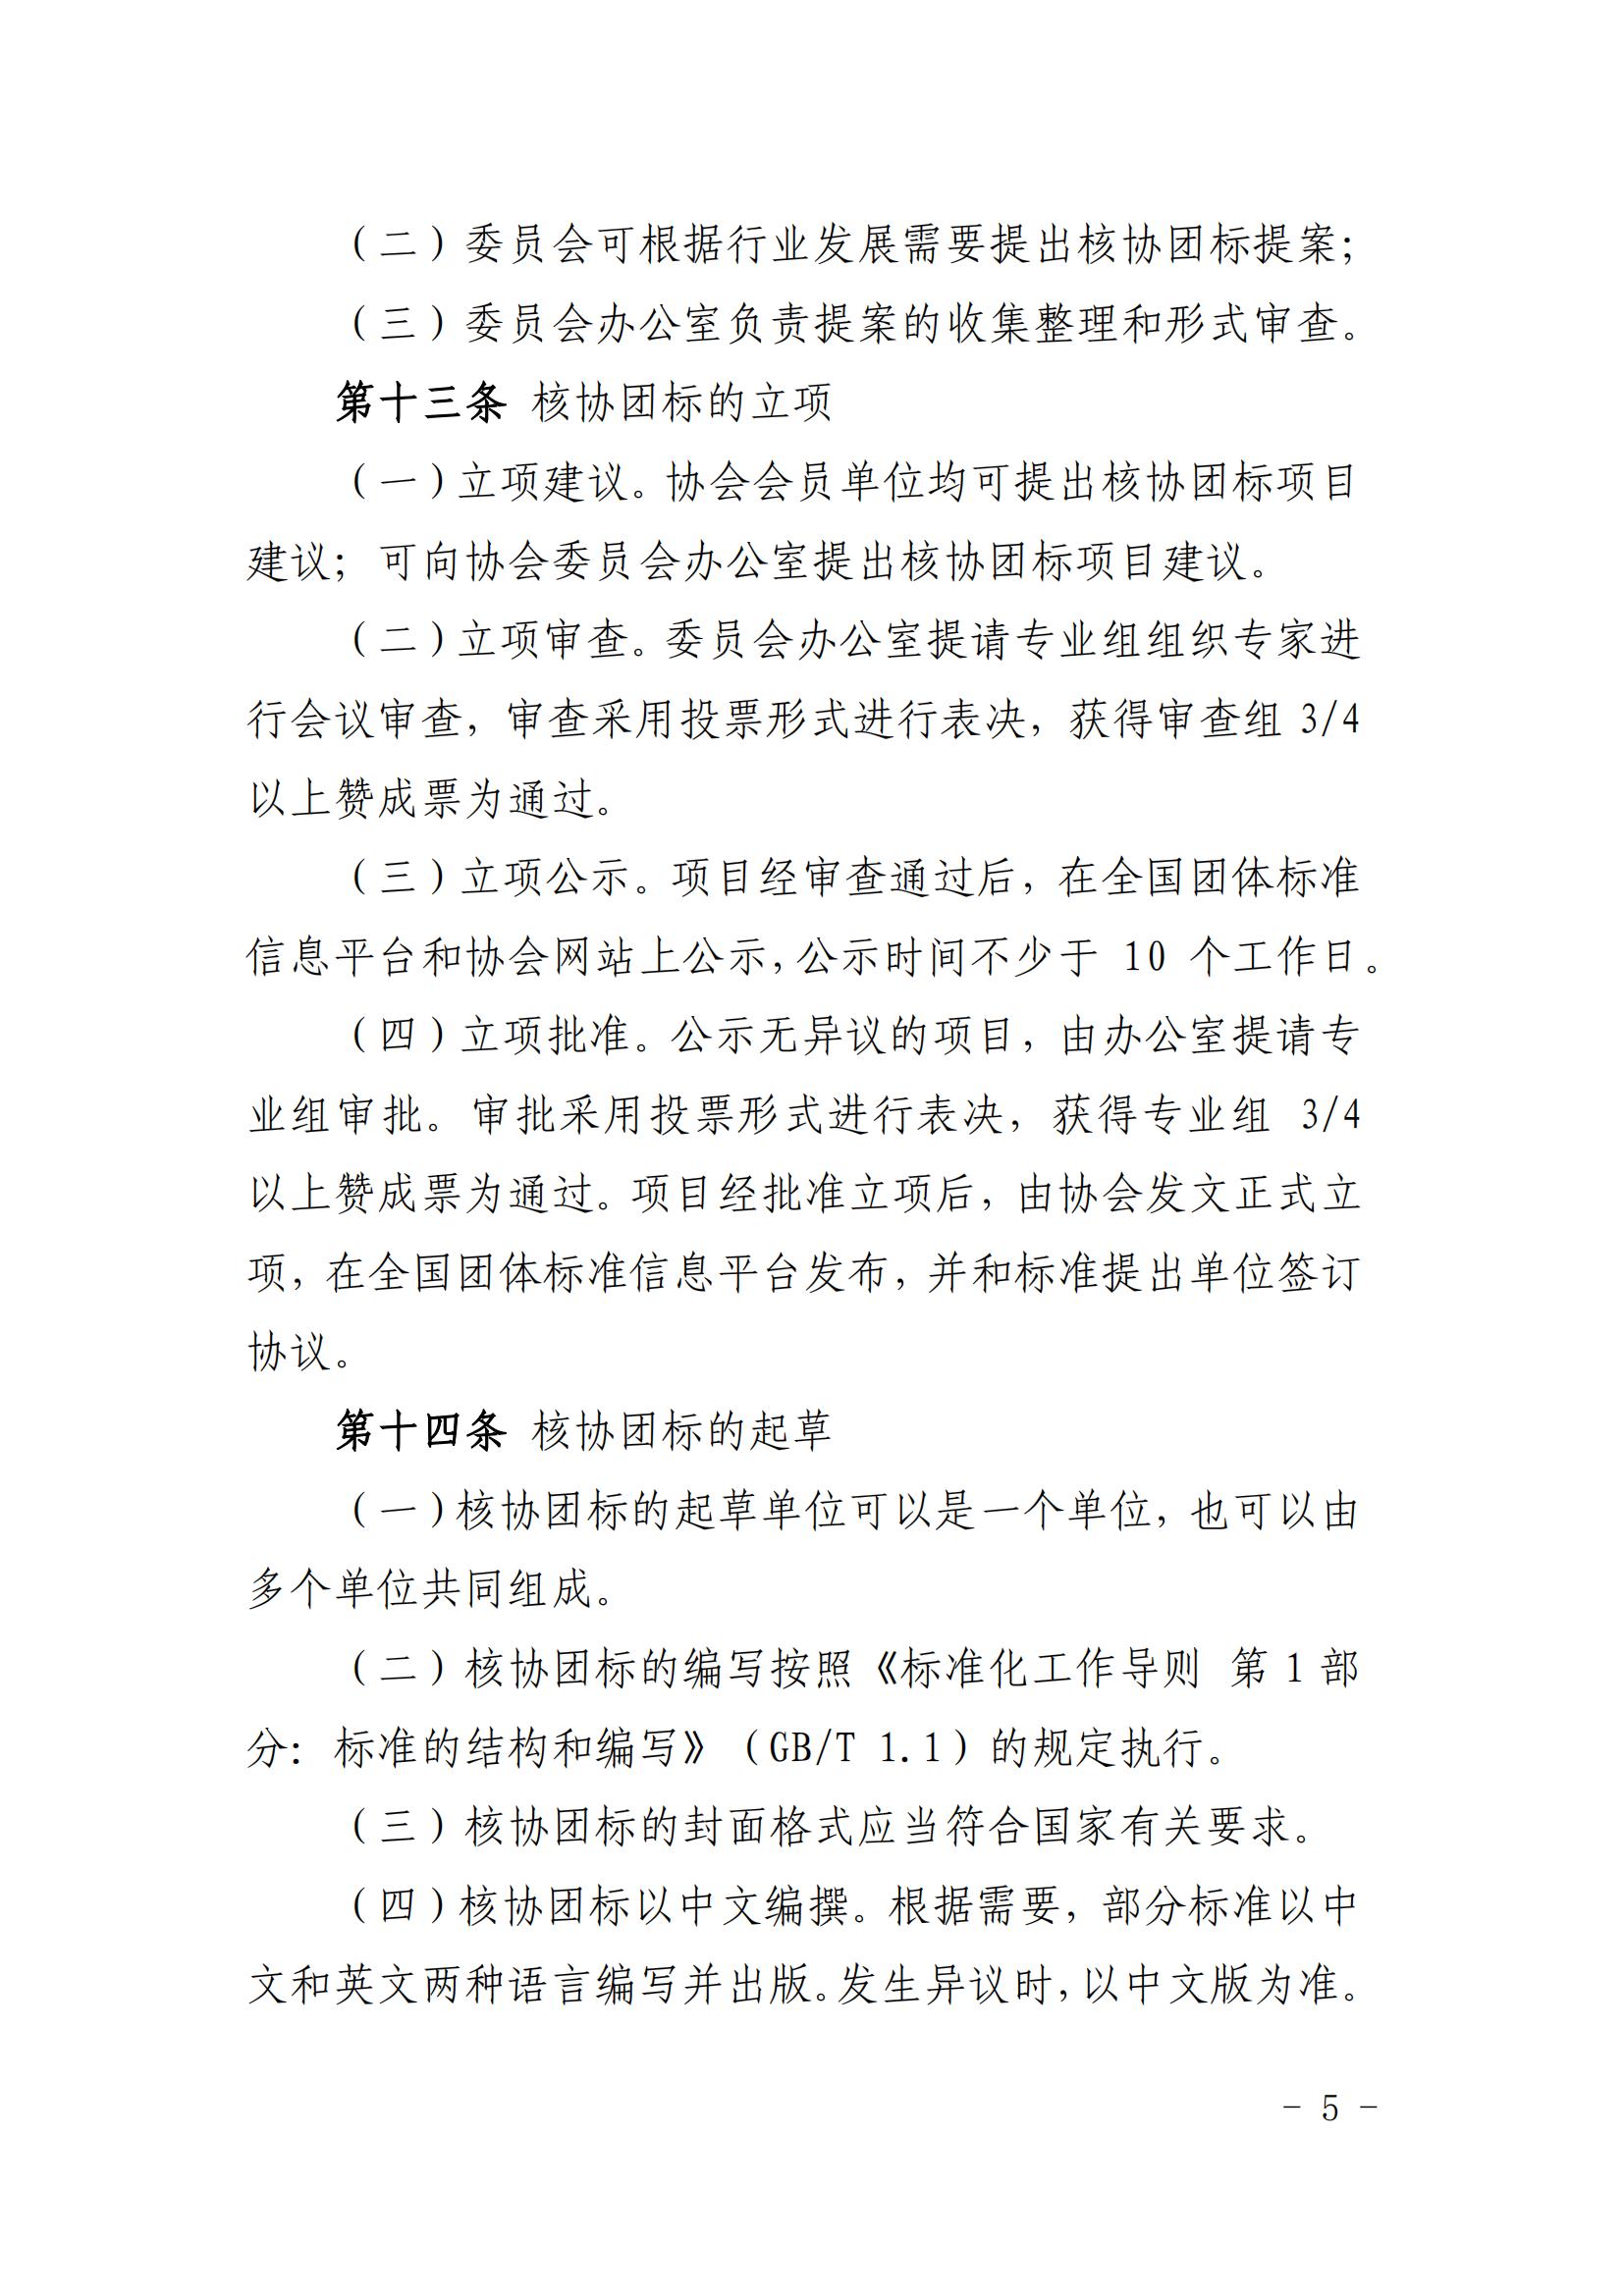 关于印发《中国核能行业协会团体标准管理办法（试行）》和《中国核能行业协会团体标准制修订细则（试行）》的通知_04.jpg